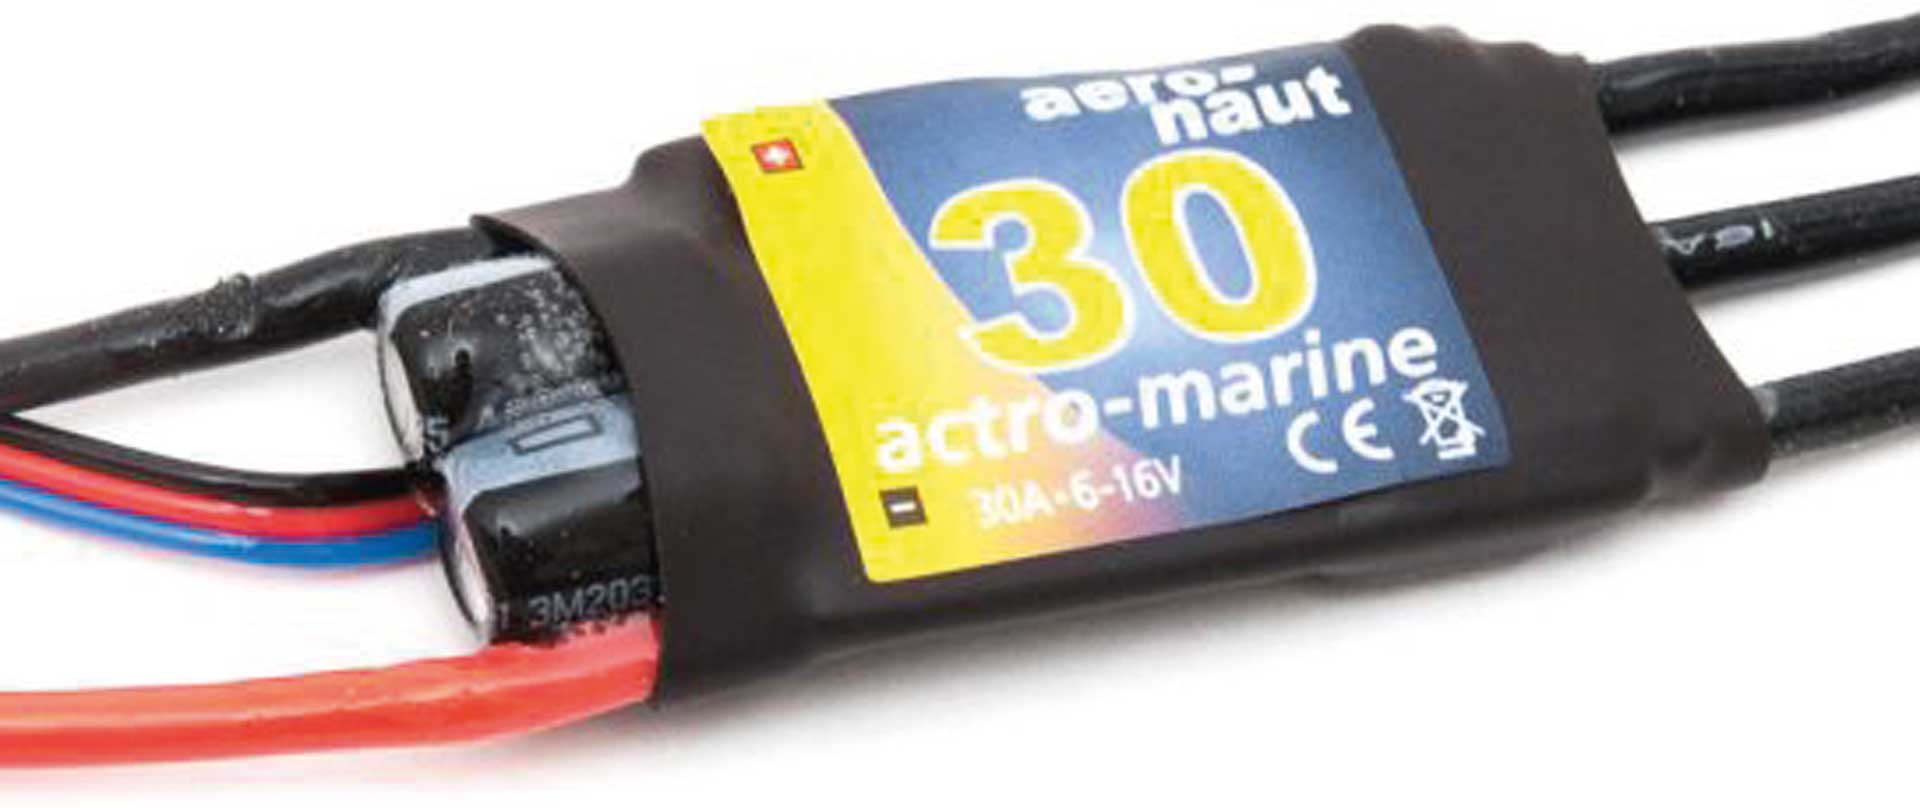 AERONAUT actro-marine 30 regulator